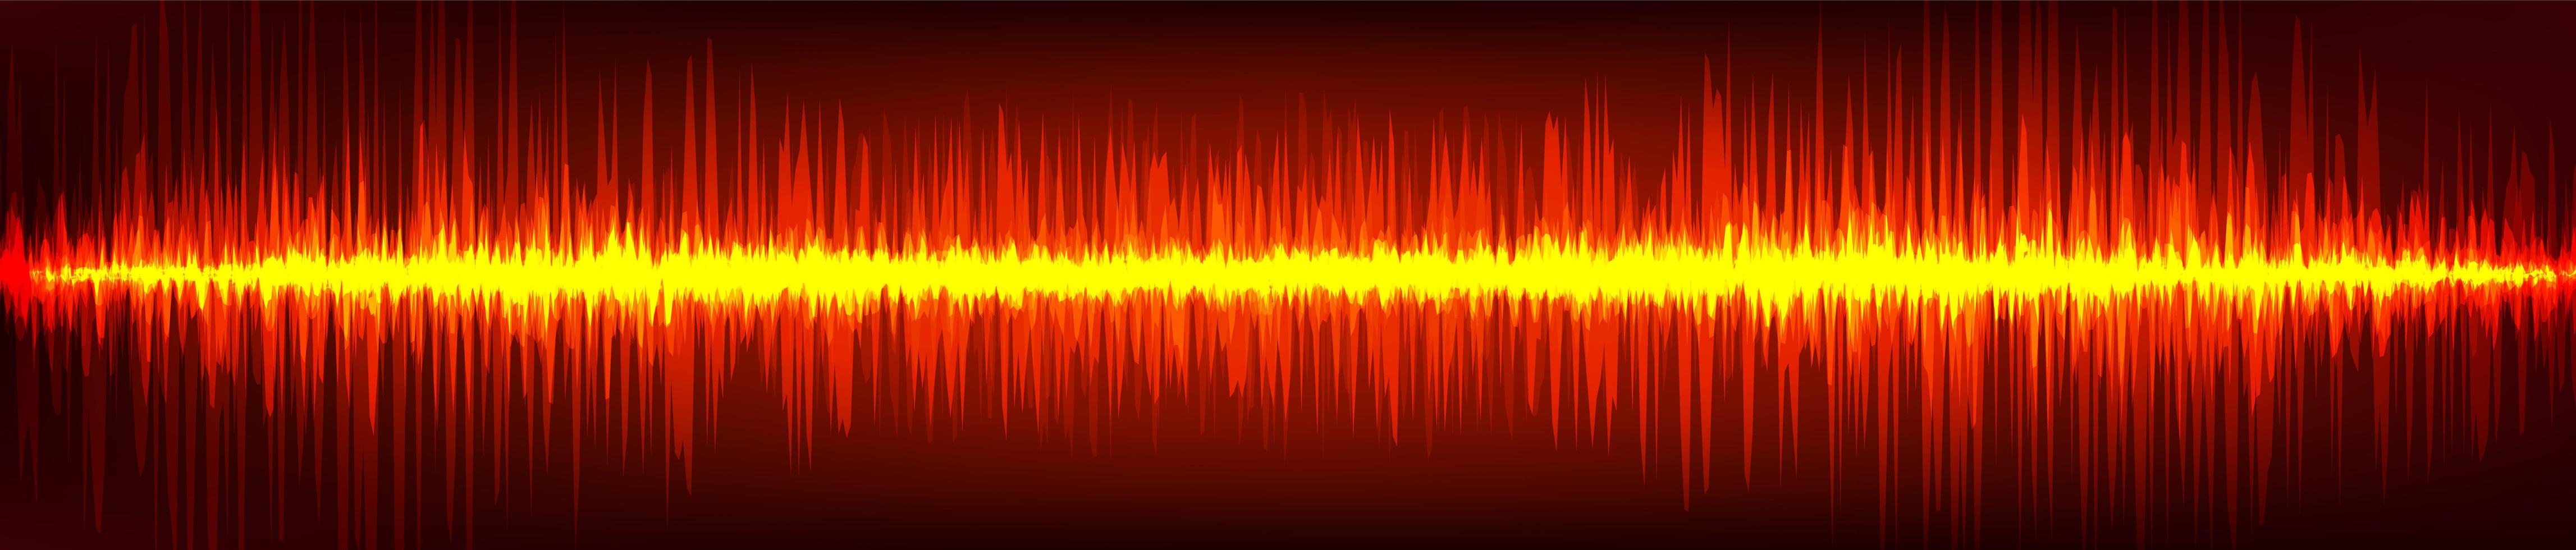 onda sonora digital de chama vermelha em fundo marrom, conceito de onda de tecnologia, design para estúdio de música e ciência, ilustração vetorial. vetor